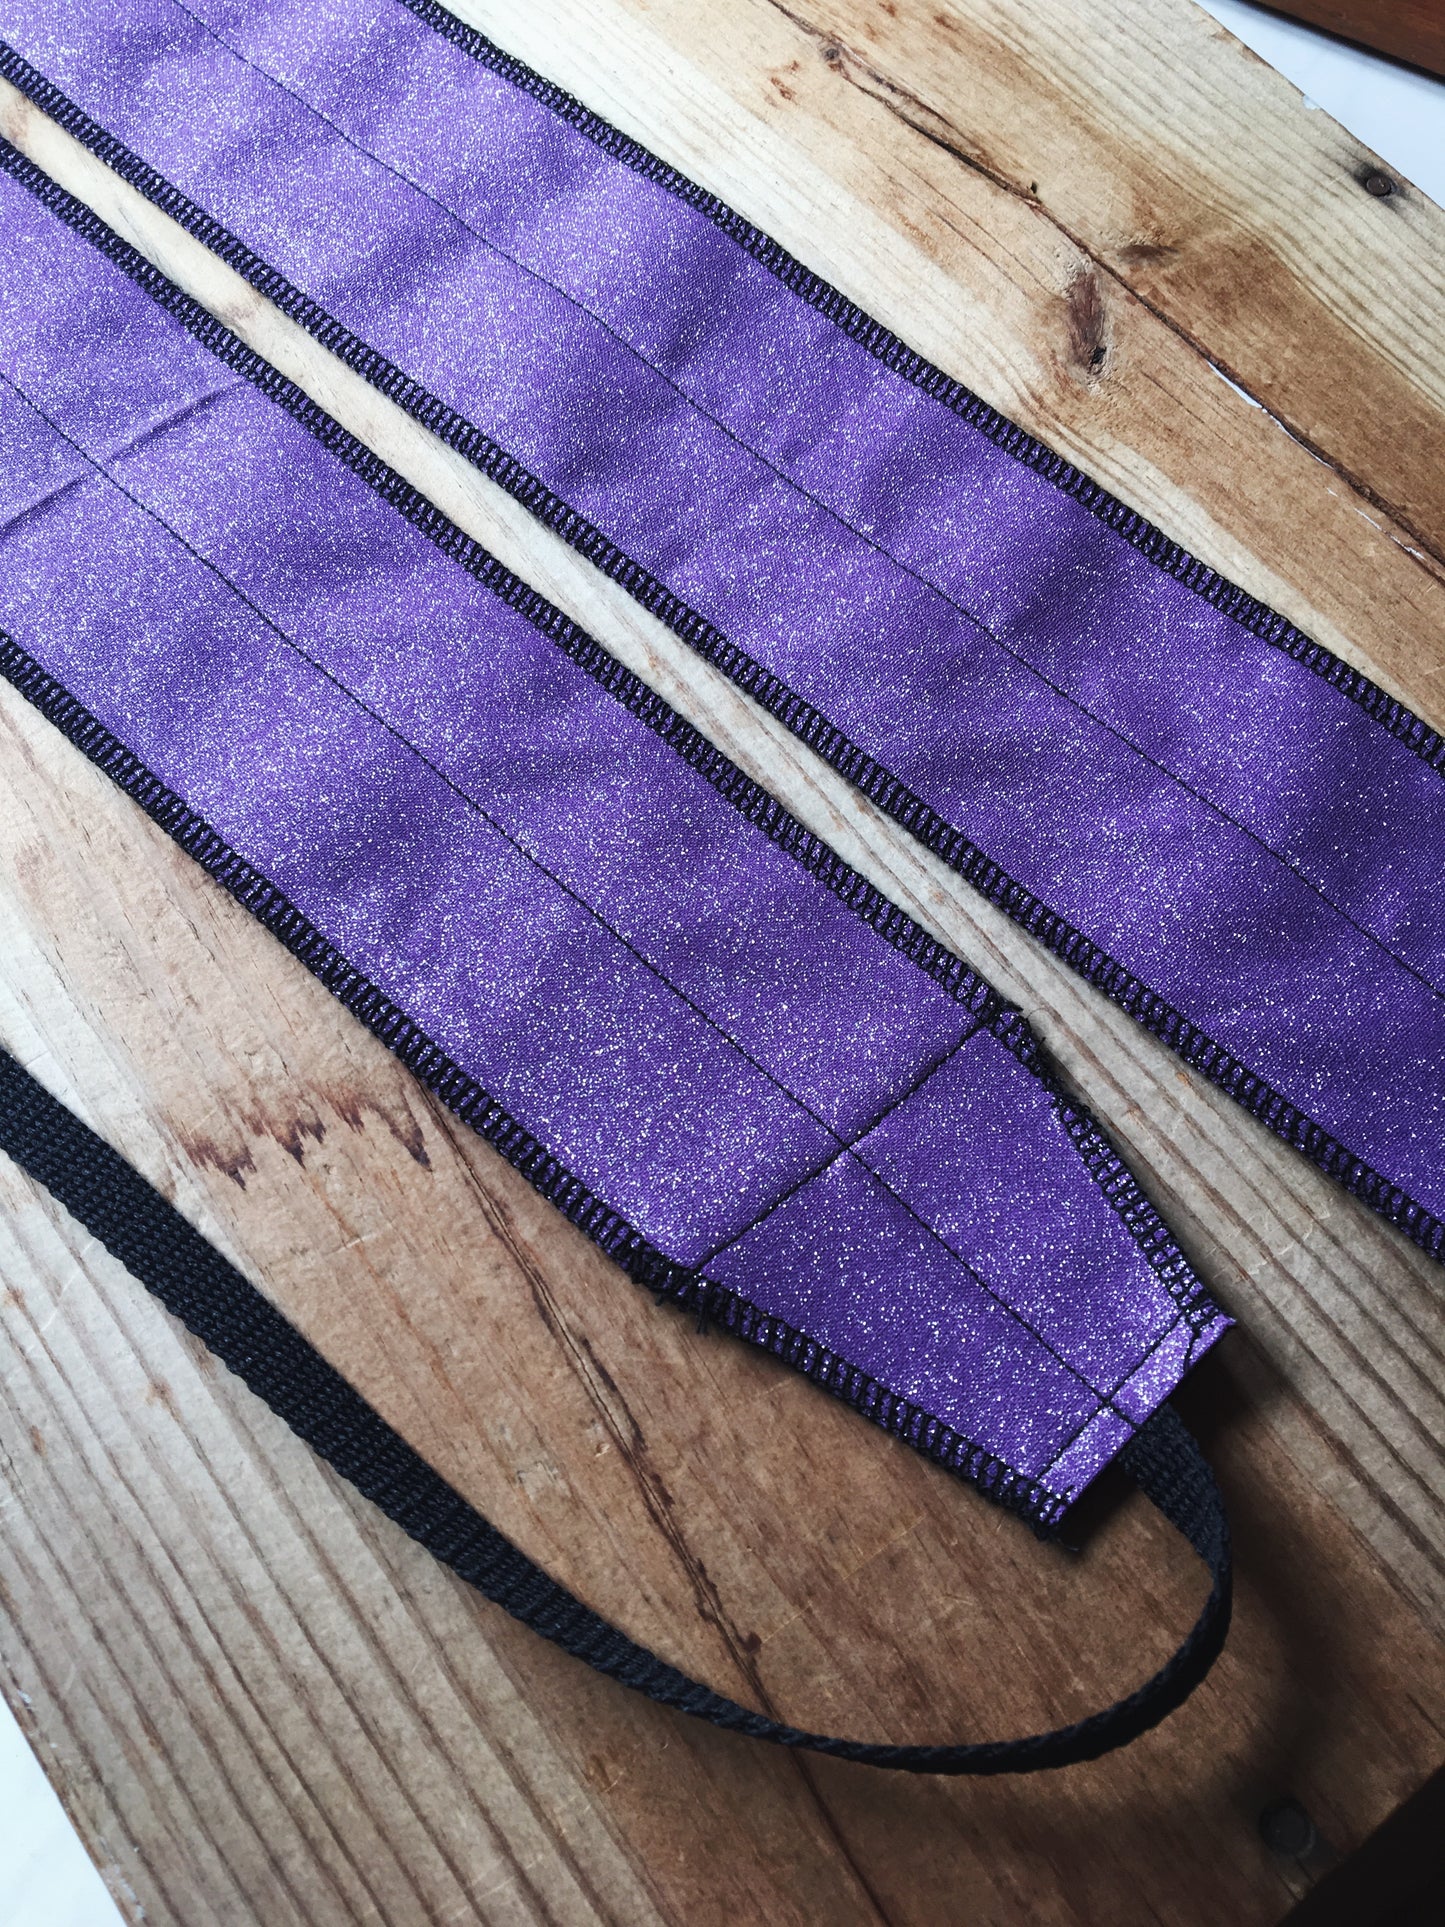 Purple glitter wrist wrap